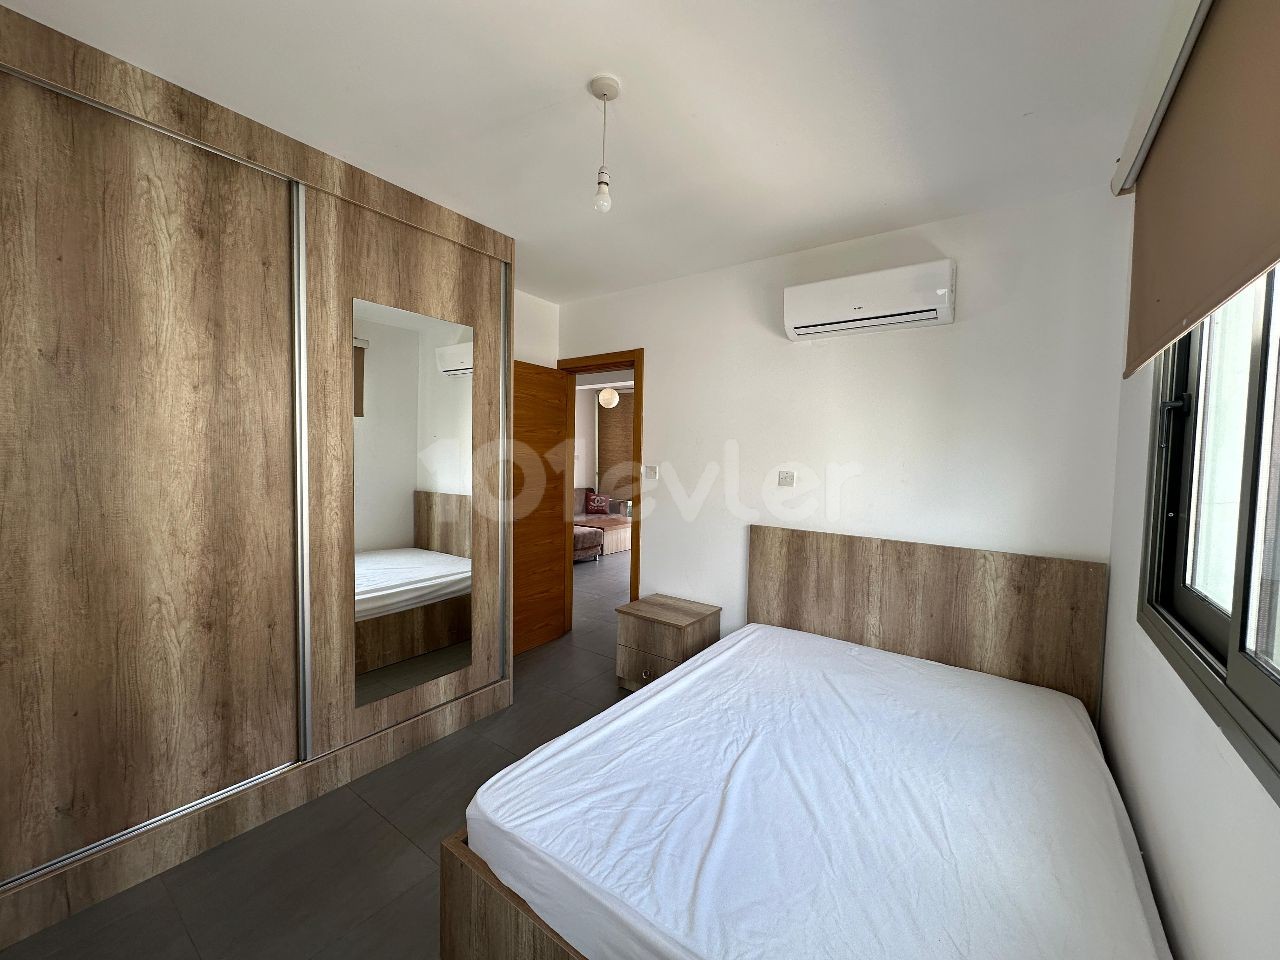 Полностью меблированная квартира 2+1 в аренду в центре Кирении от острова Редстоун